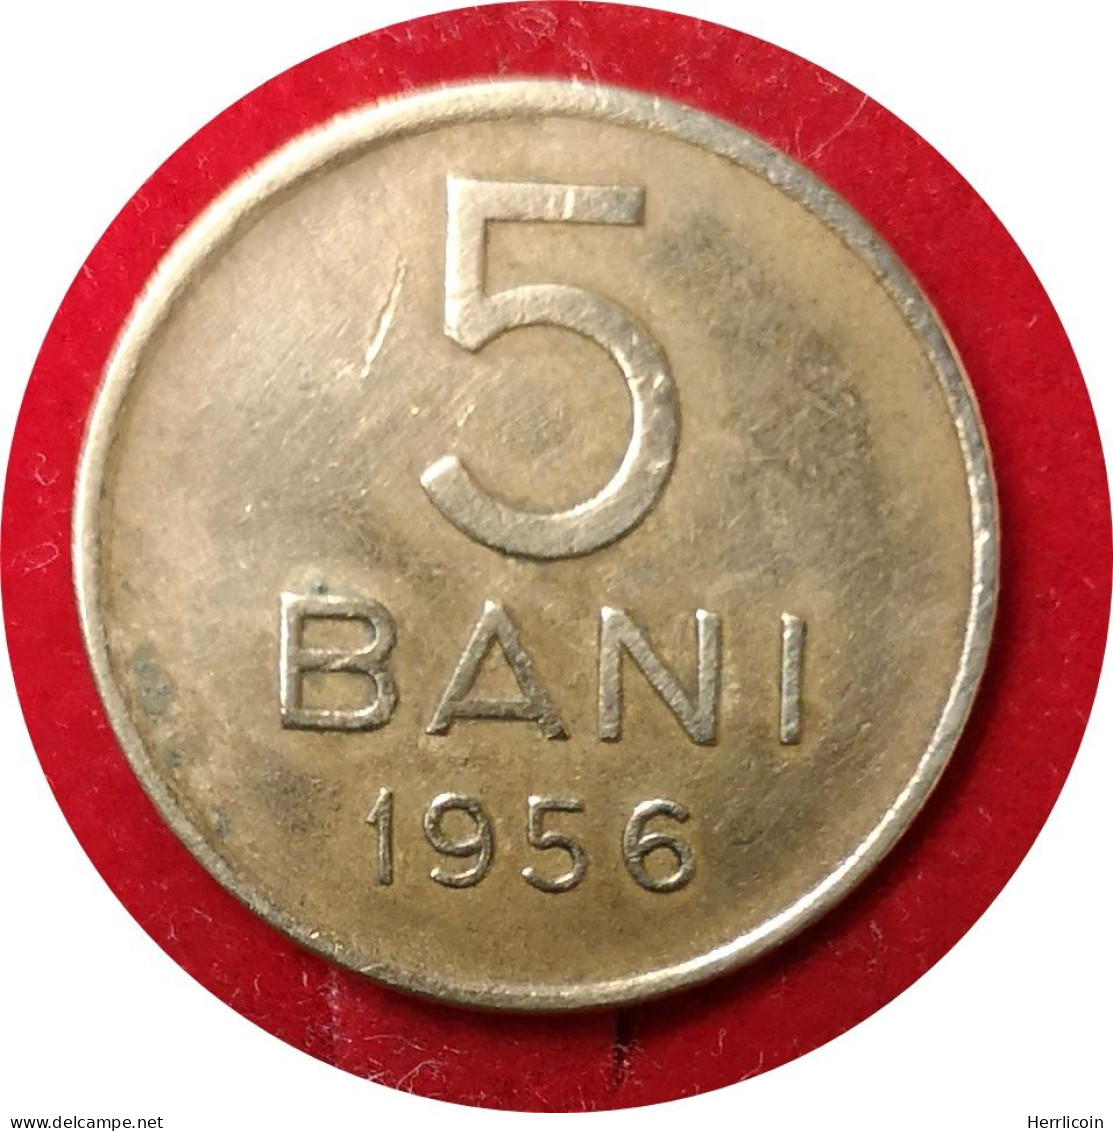 Monnaie Roumanie - 1956 - 5 Bani République Populaire - Roumanie